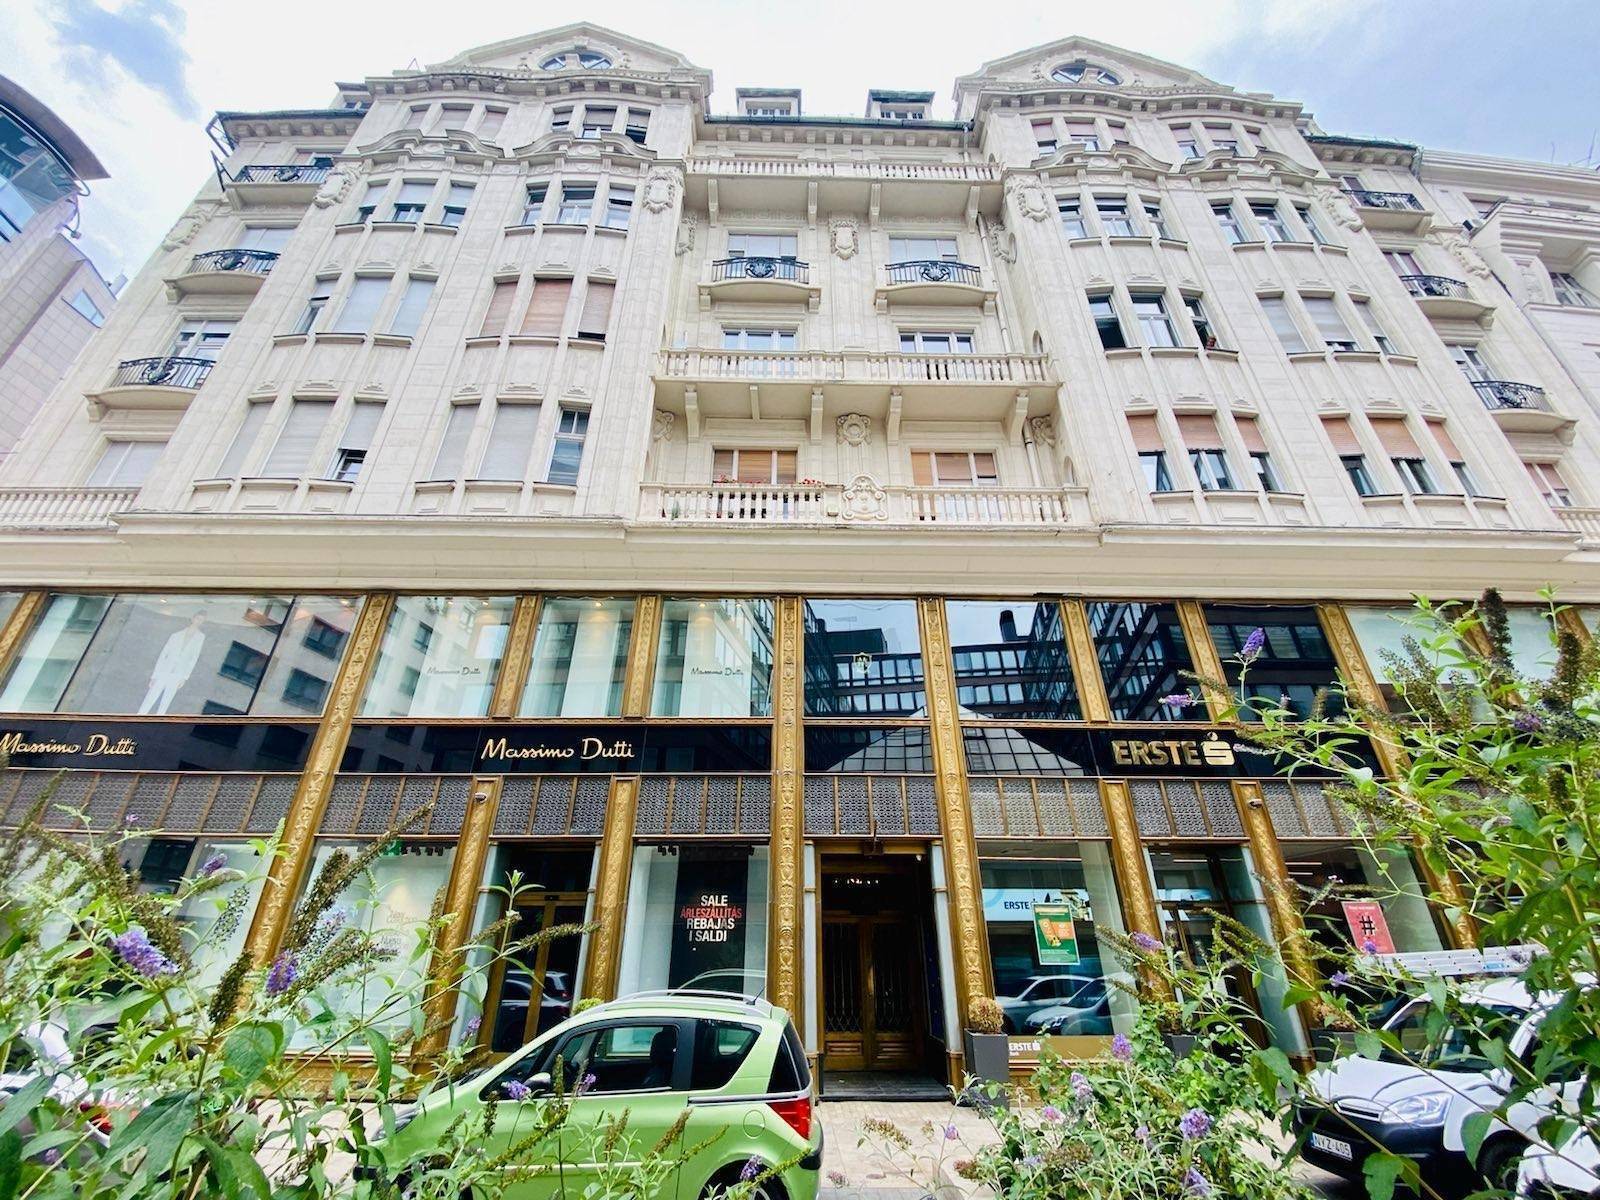 Елітна квартира Наришкіна у Будапешті оформлена на соратника Орбана. Фото